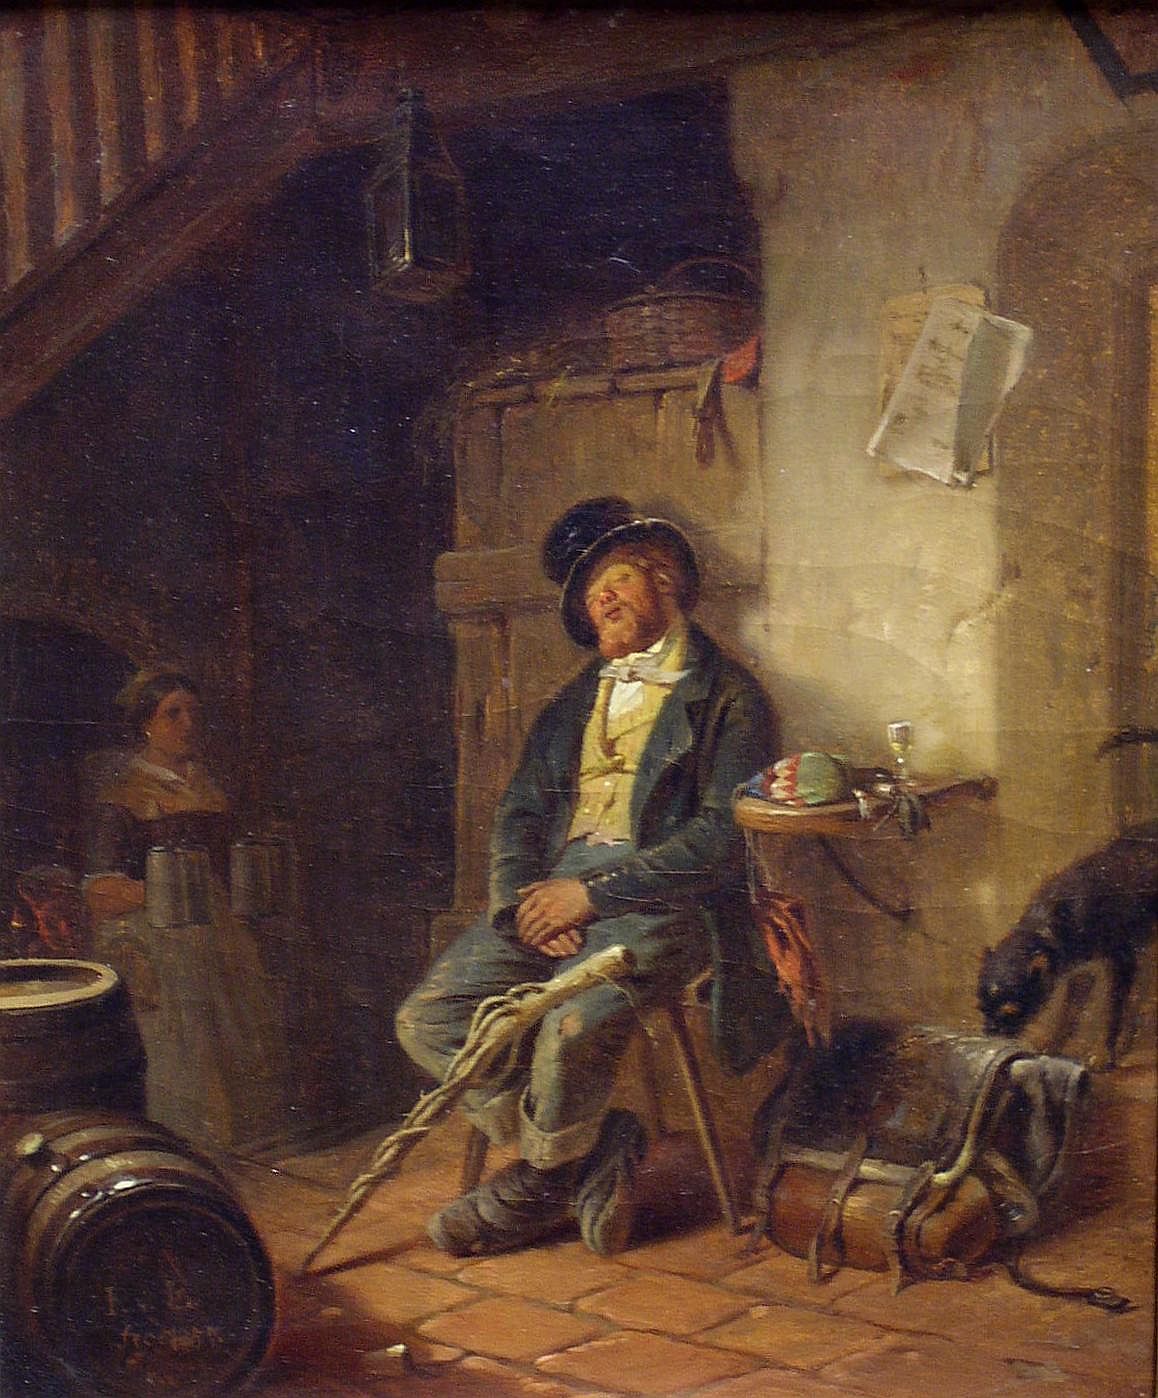 [Gemälde: "Schlafender Wandergeselle", 1857]